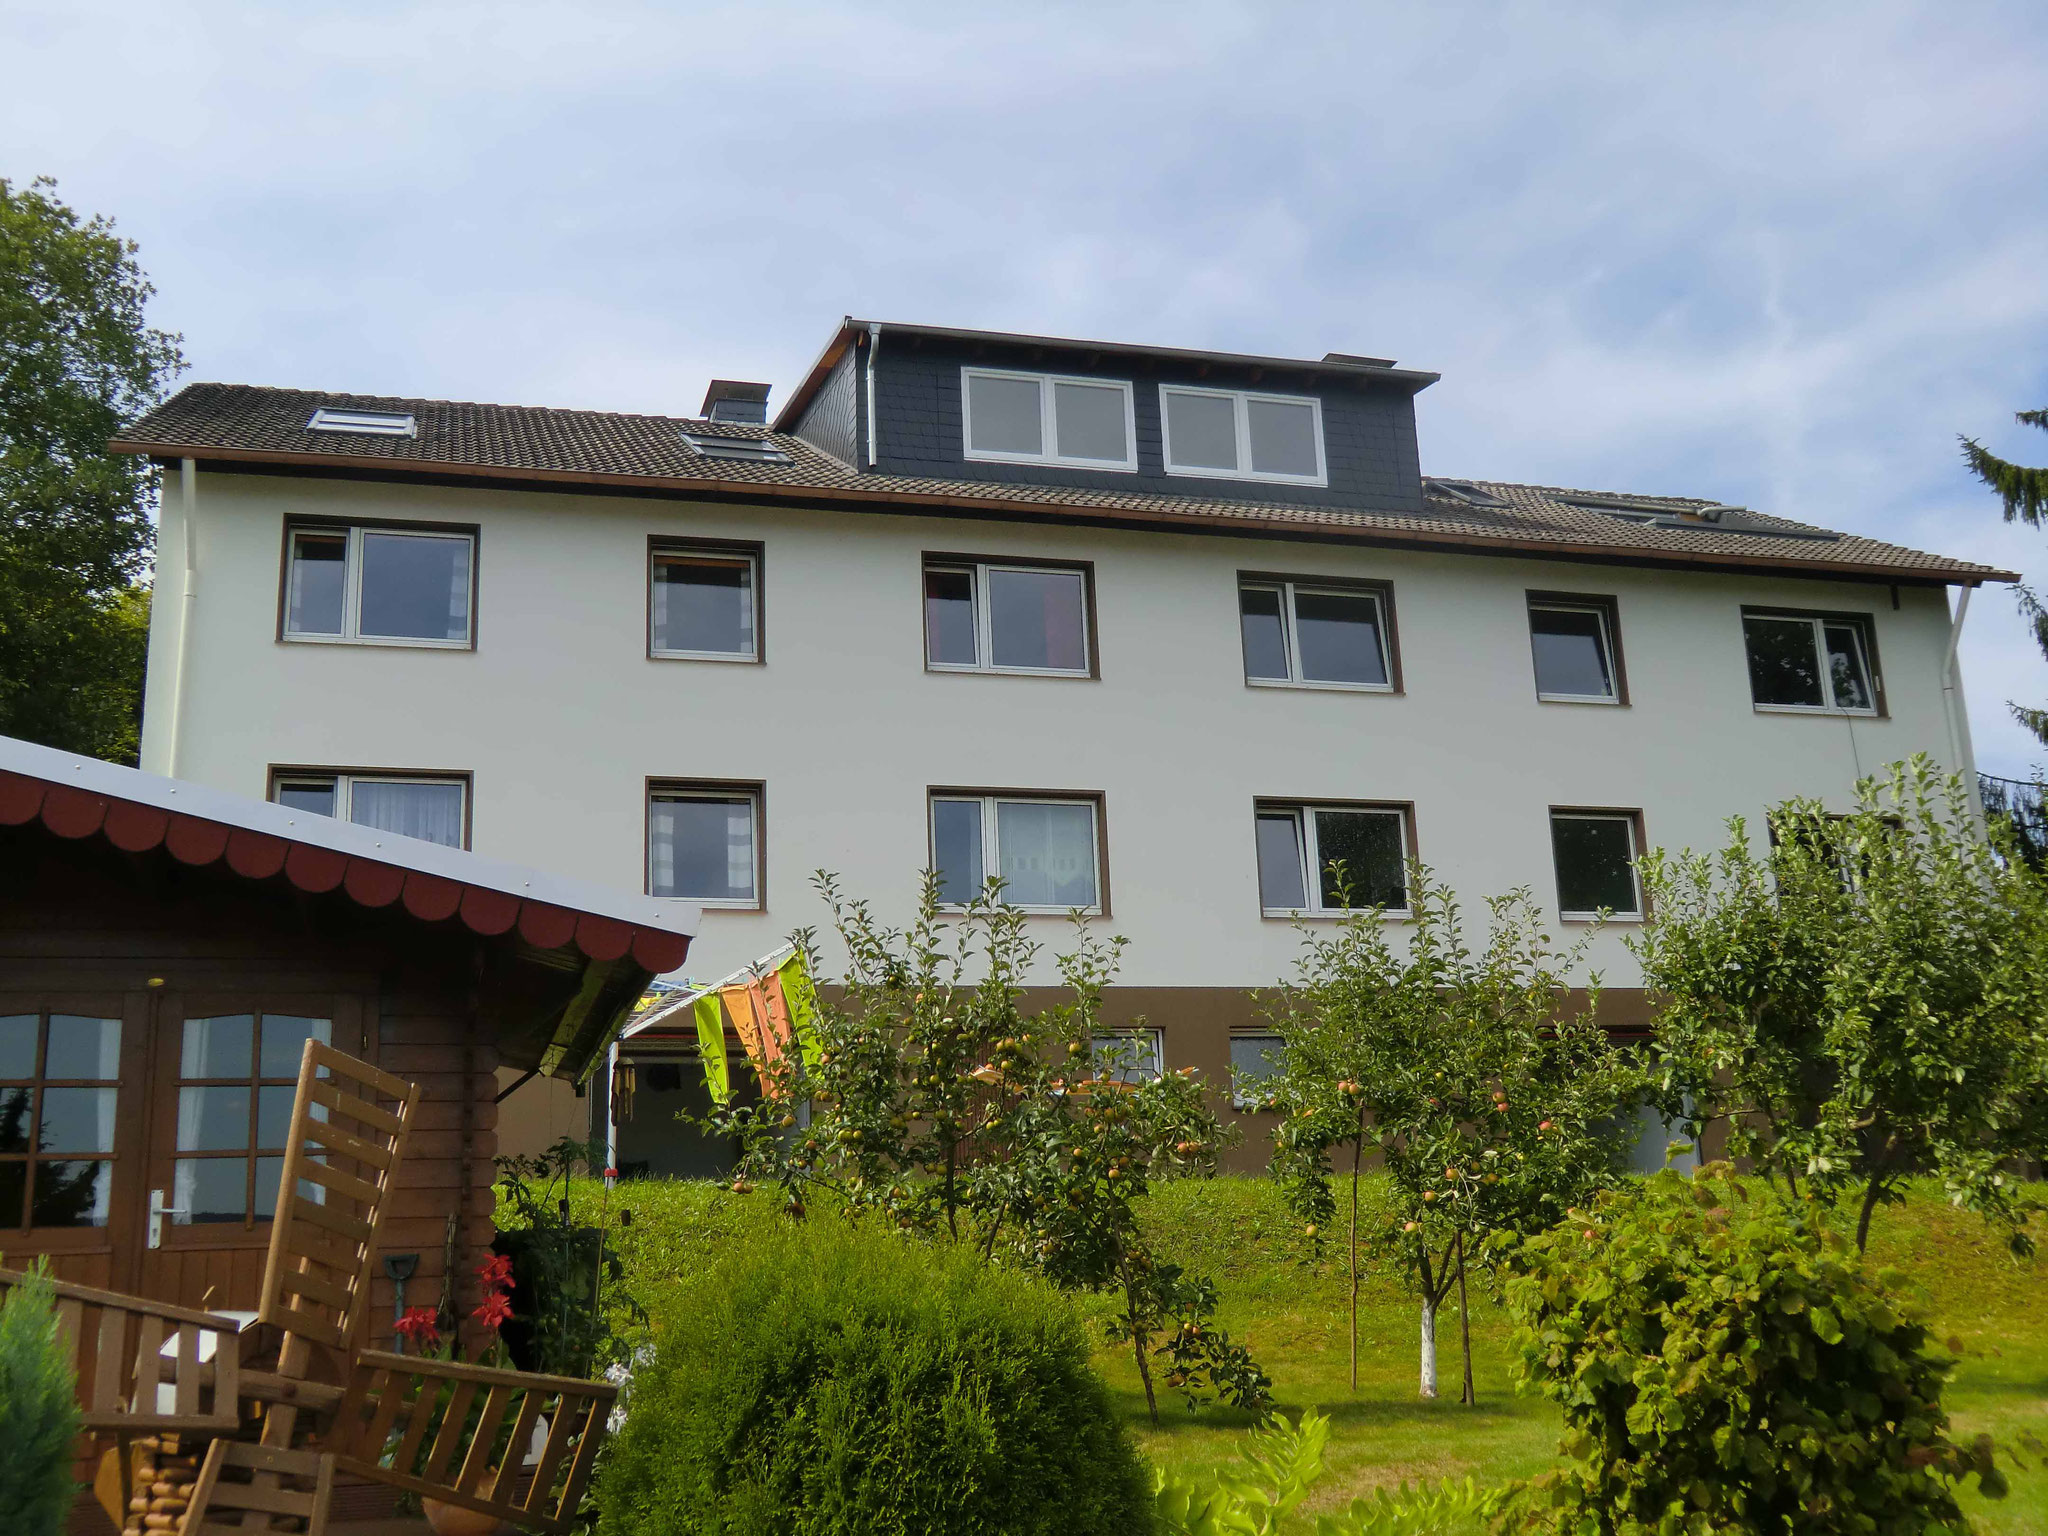 Hausverwaltung Referenz - Mehrfamilienhaus Netphen